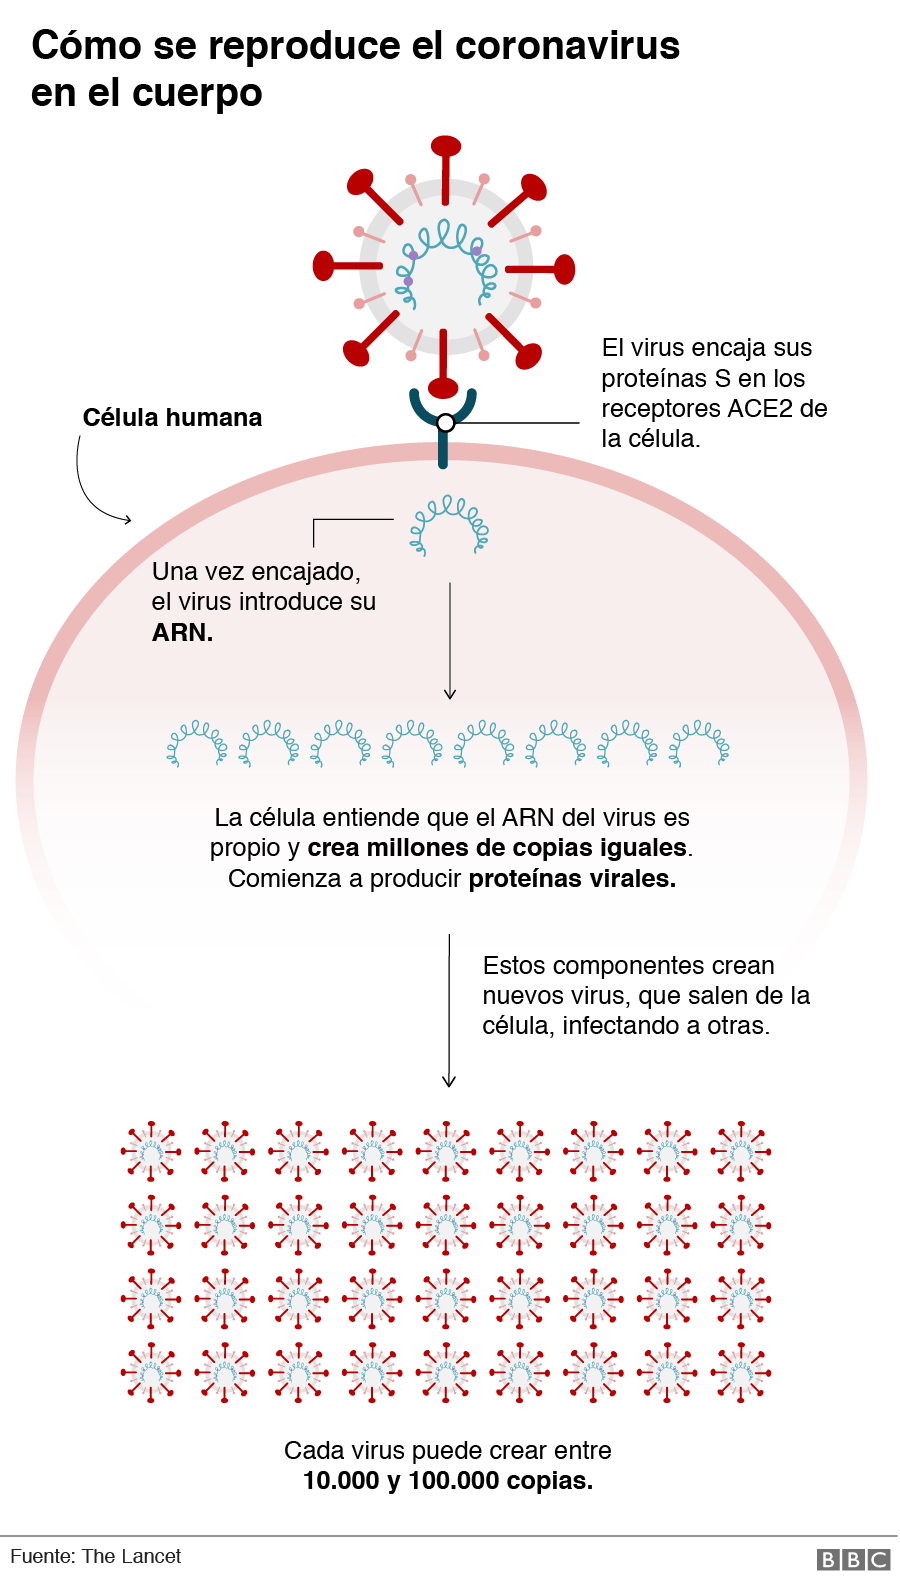 Gráfico mostrando cómo se reproduce el coronavirus en el cuerpo